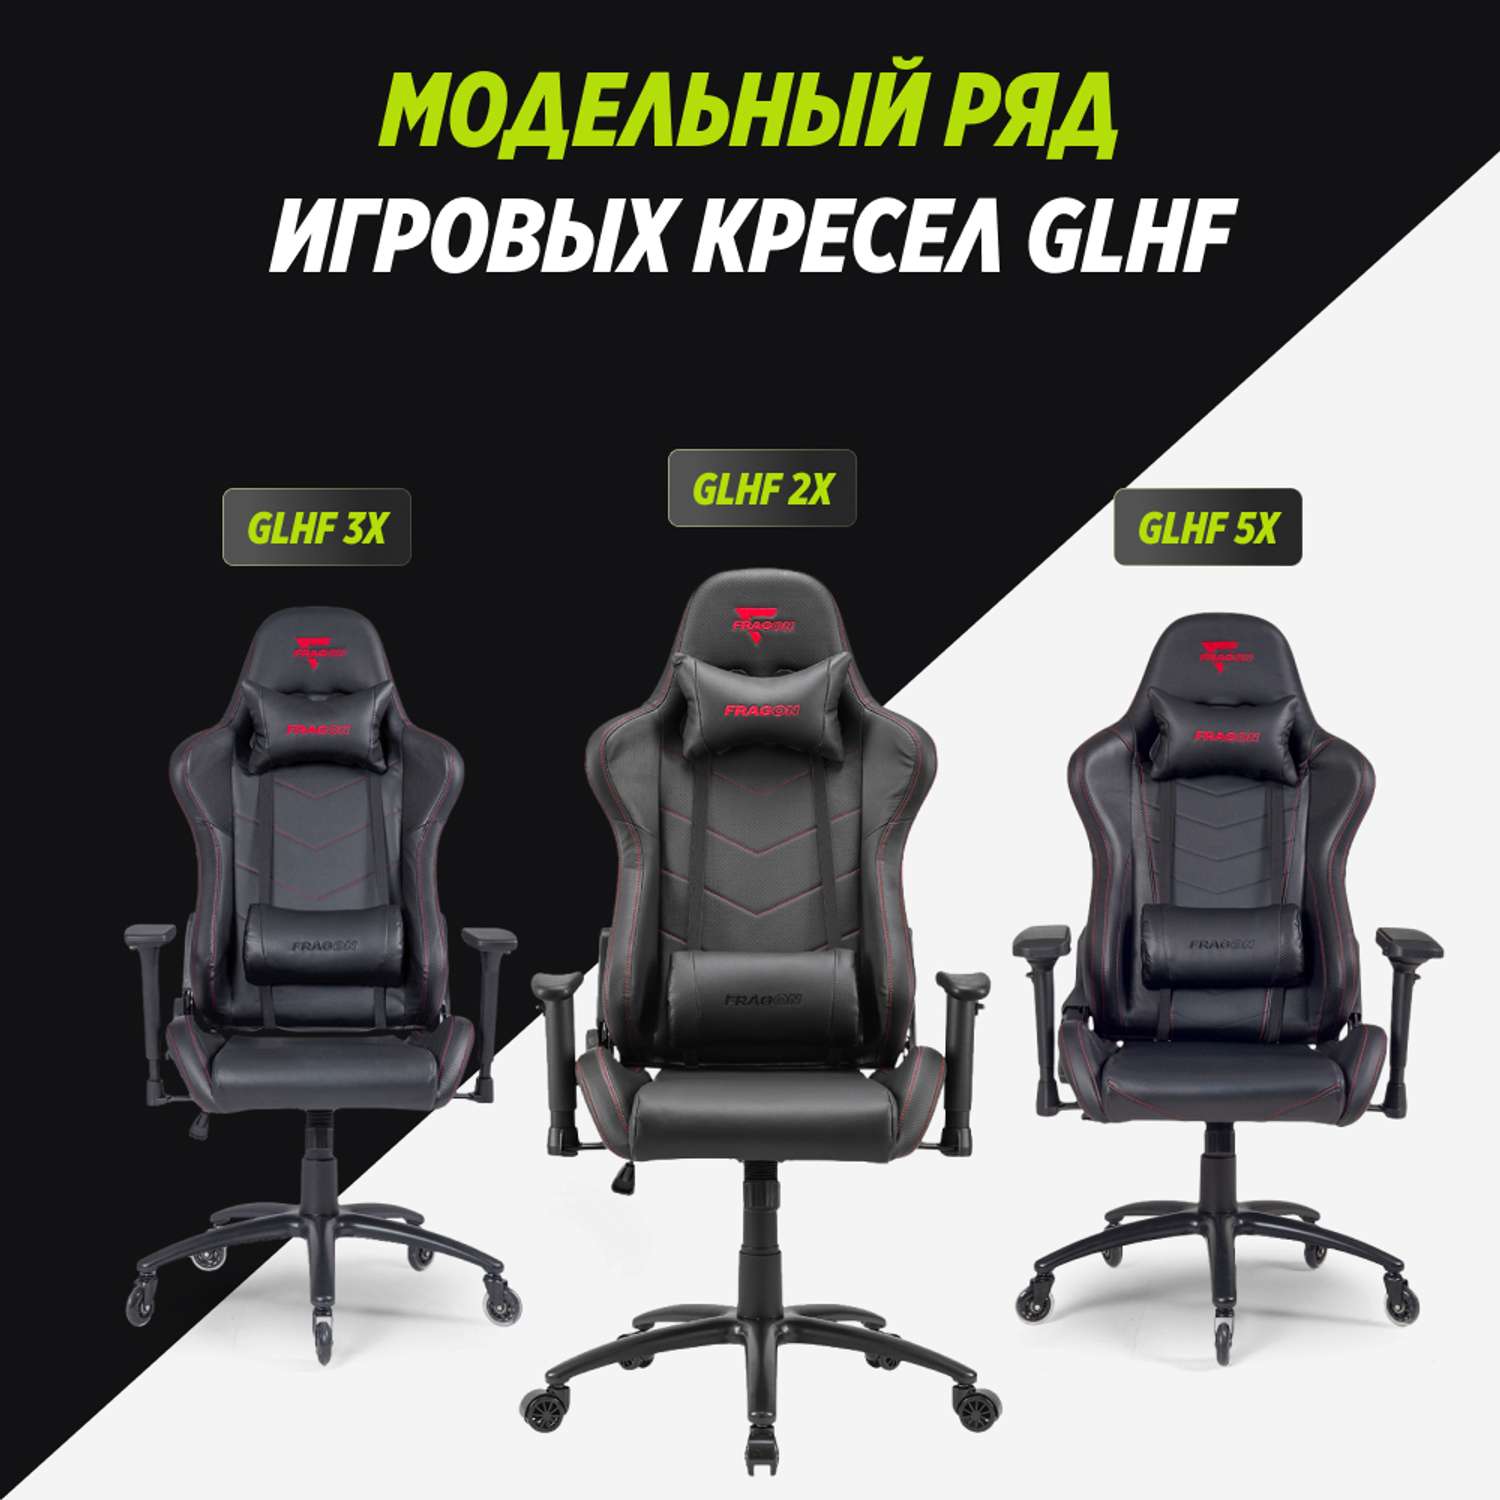 Компьютерное кресло GLHF серия 2X Black - фото 10